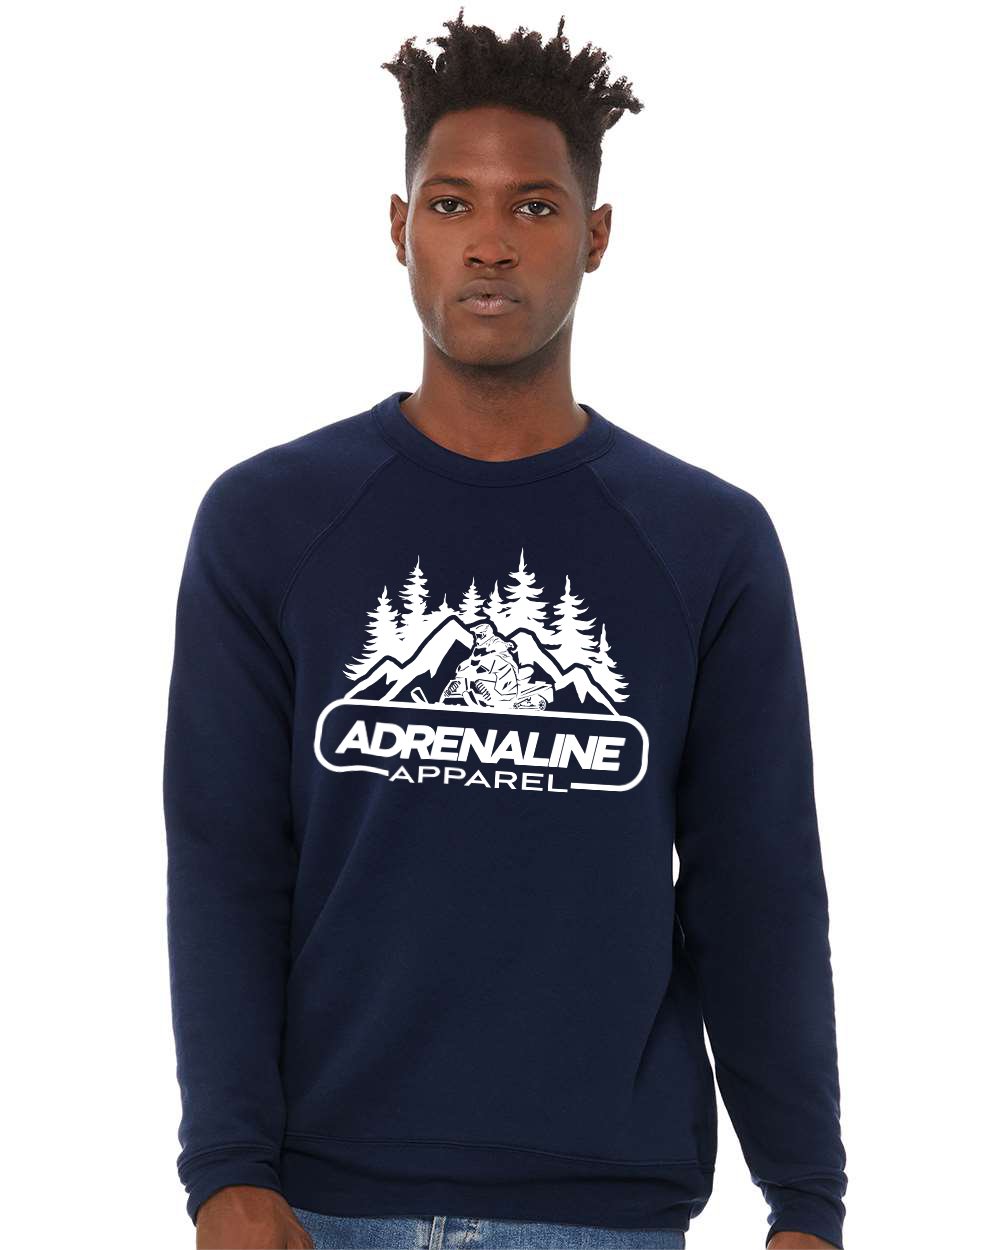 Skidoo Adrenaline Crewneck Sweatshirt - AdrenalineApparel